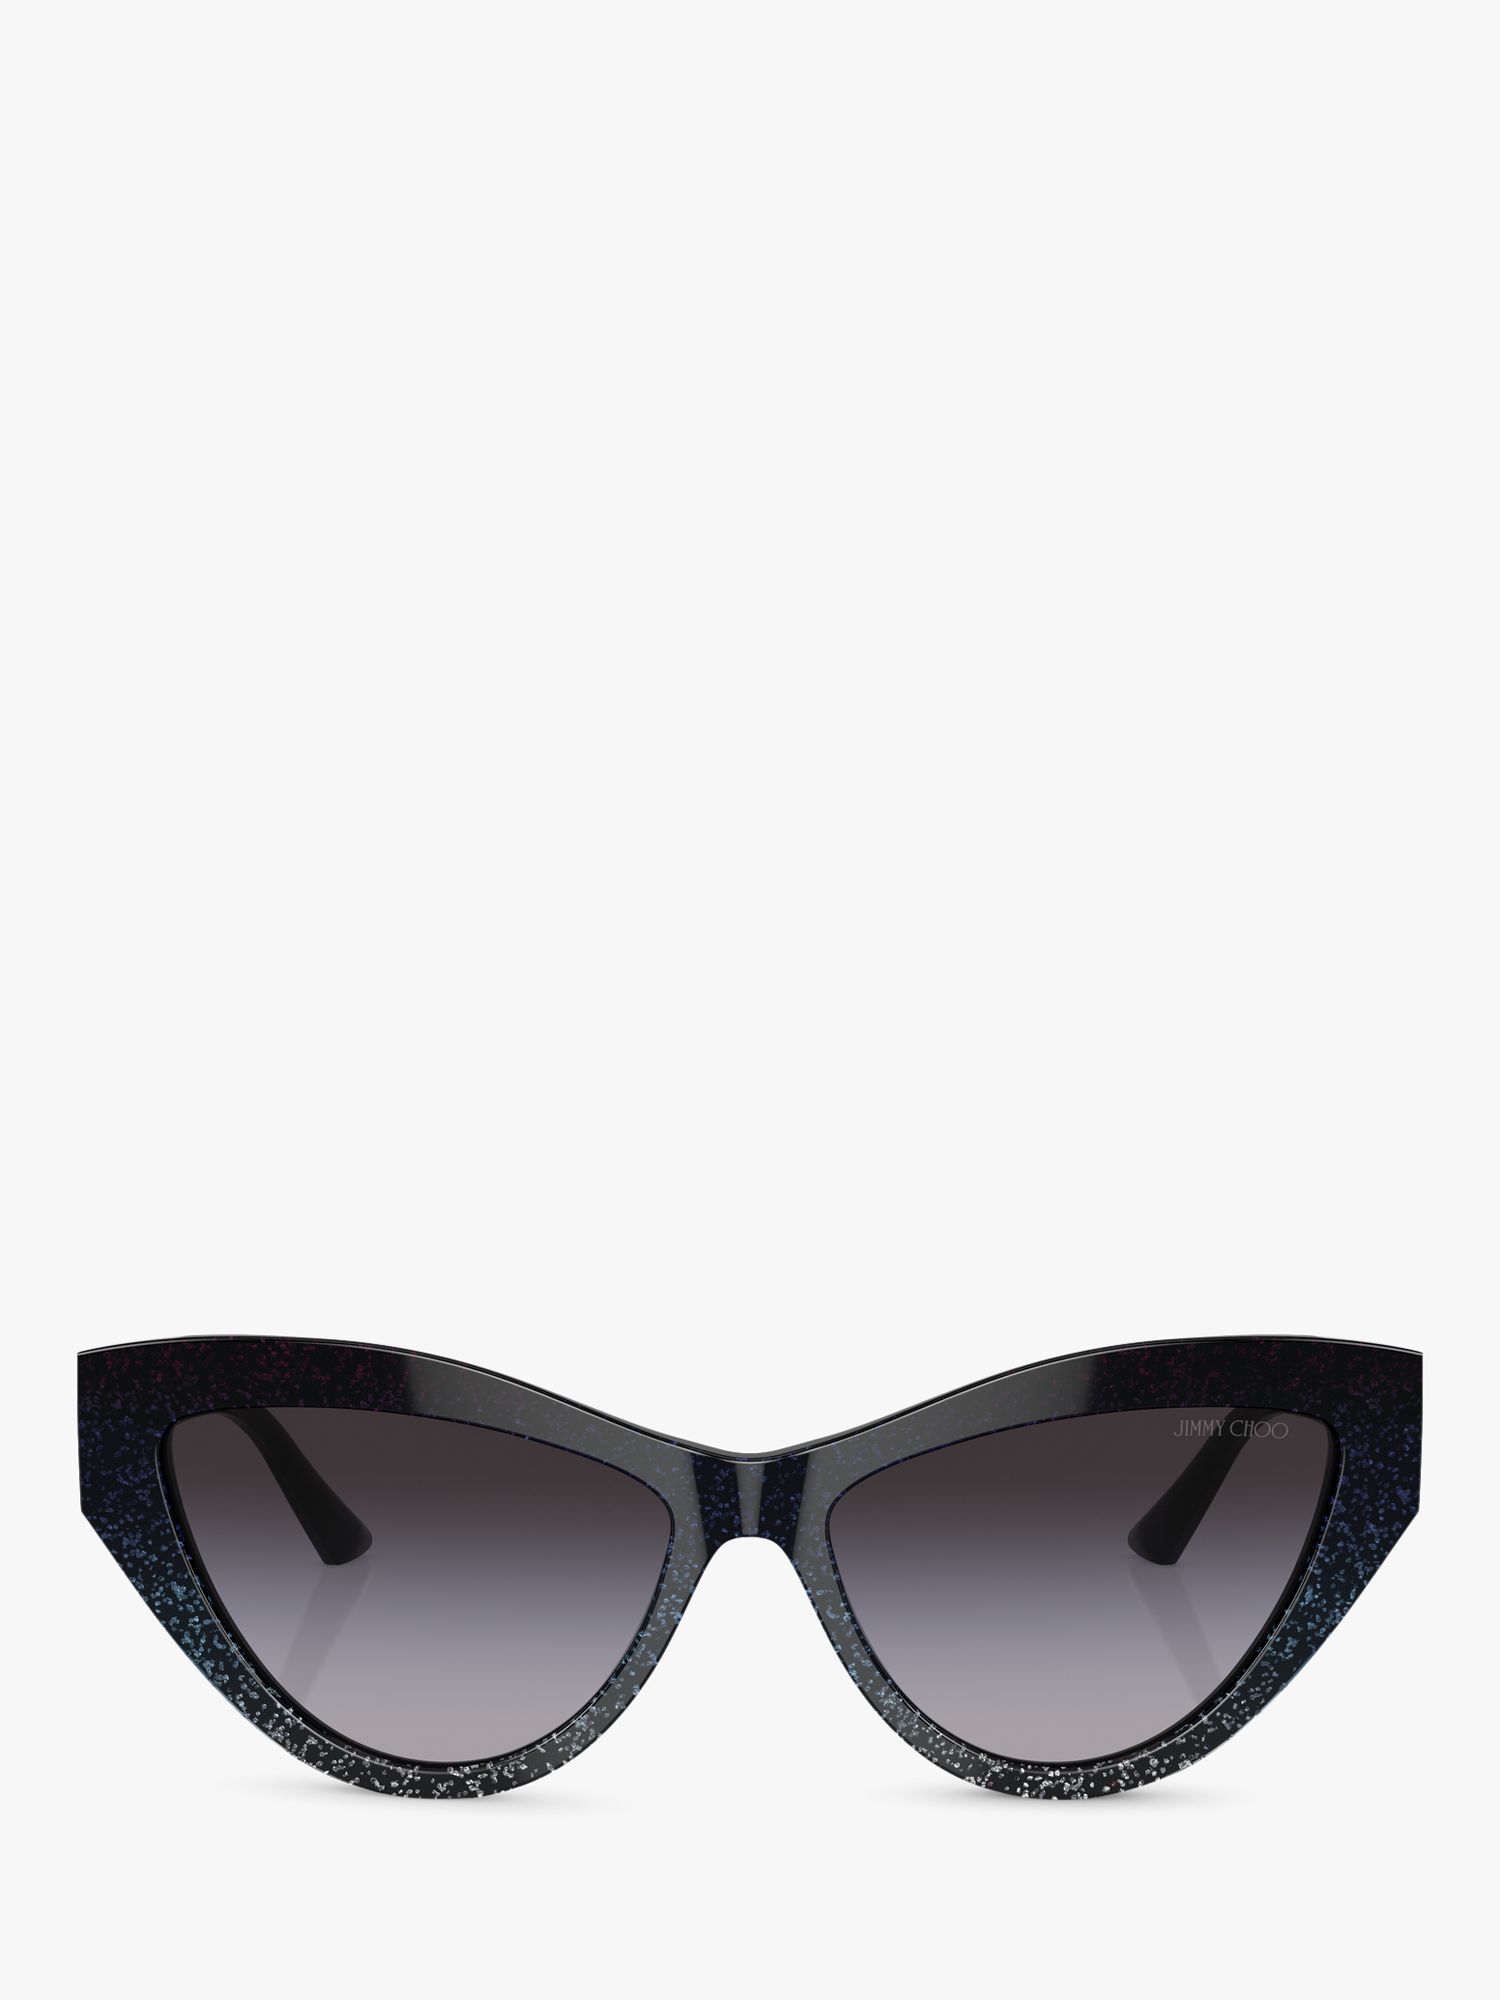 Buy Jimmy Choo JC5004 Women's Cat's Eye Sunglasses, Black Glitter/Blue Online at johnlewis.com